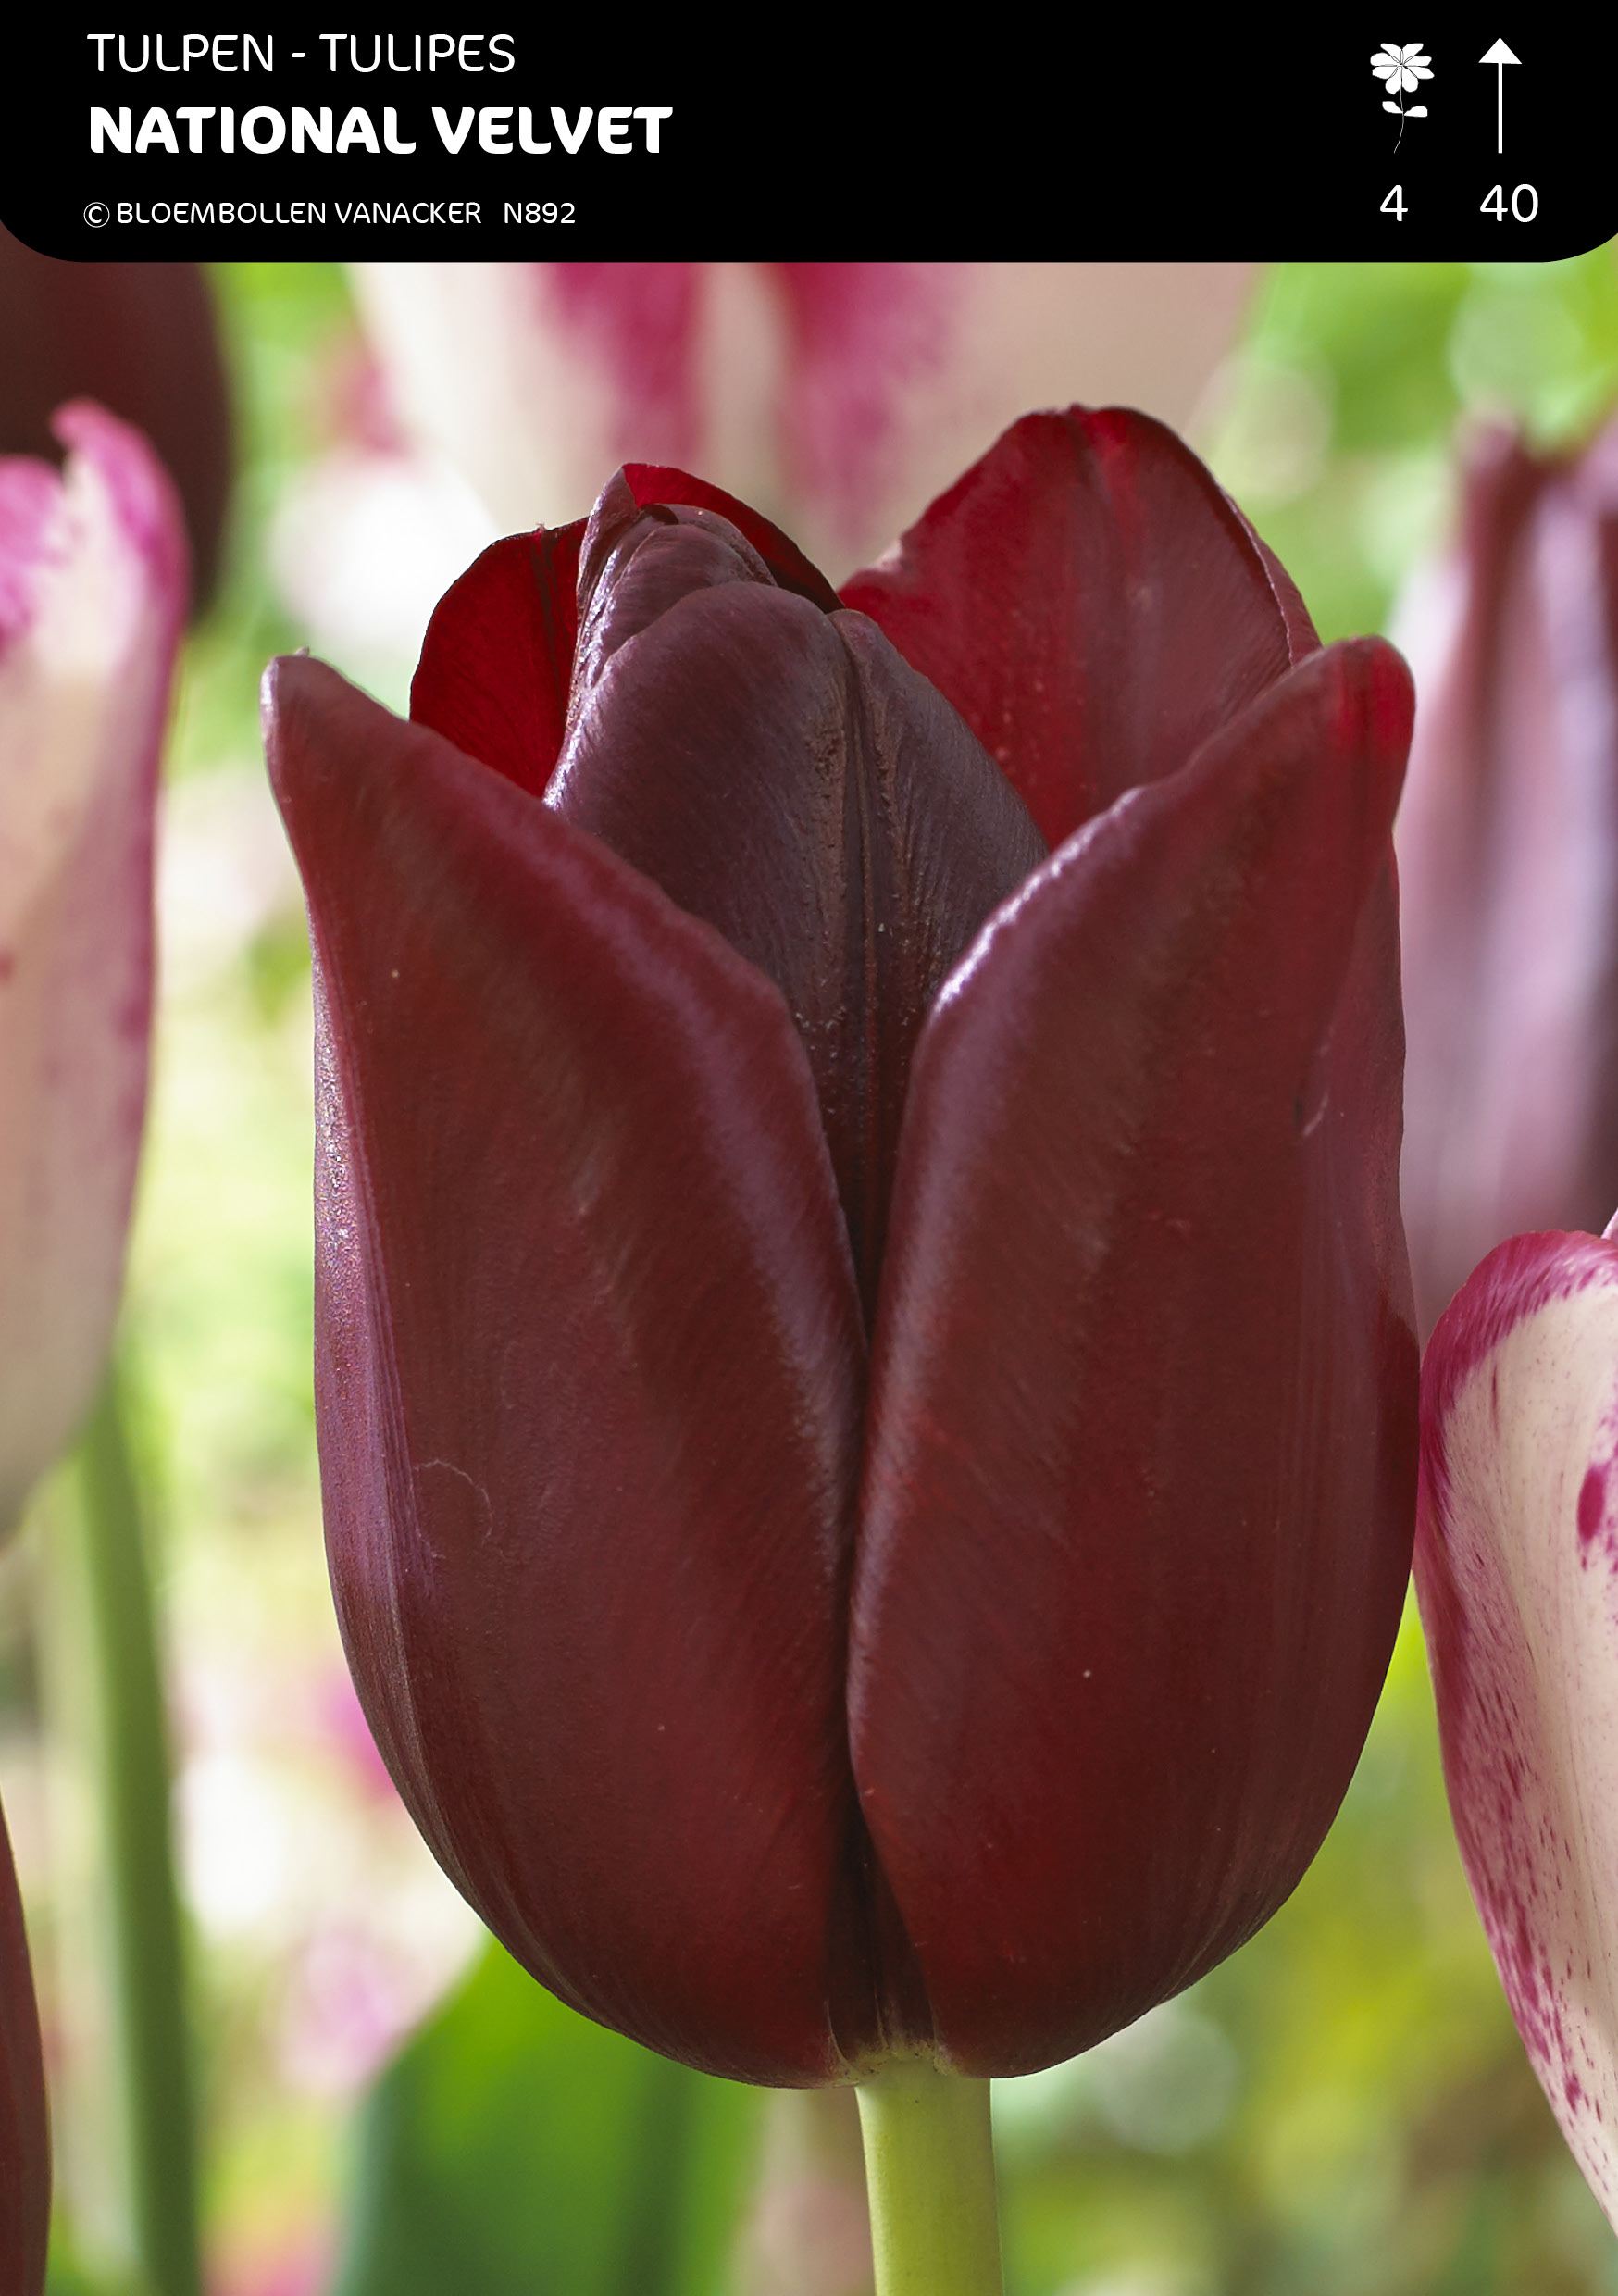 Tulpen National Velvet